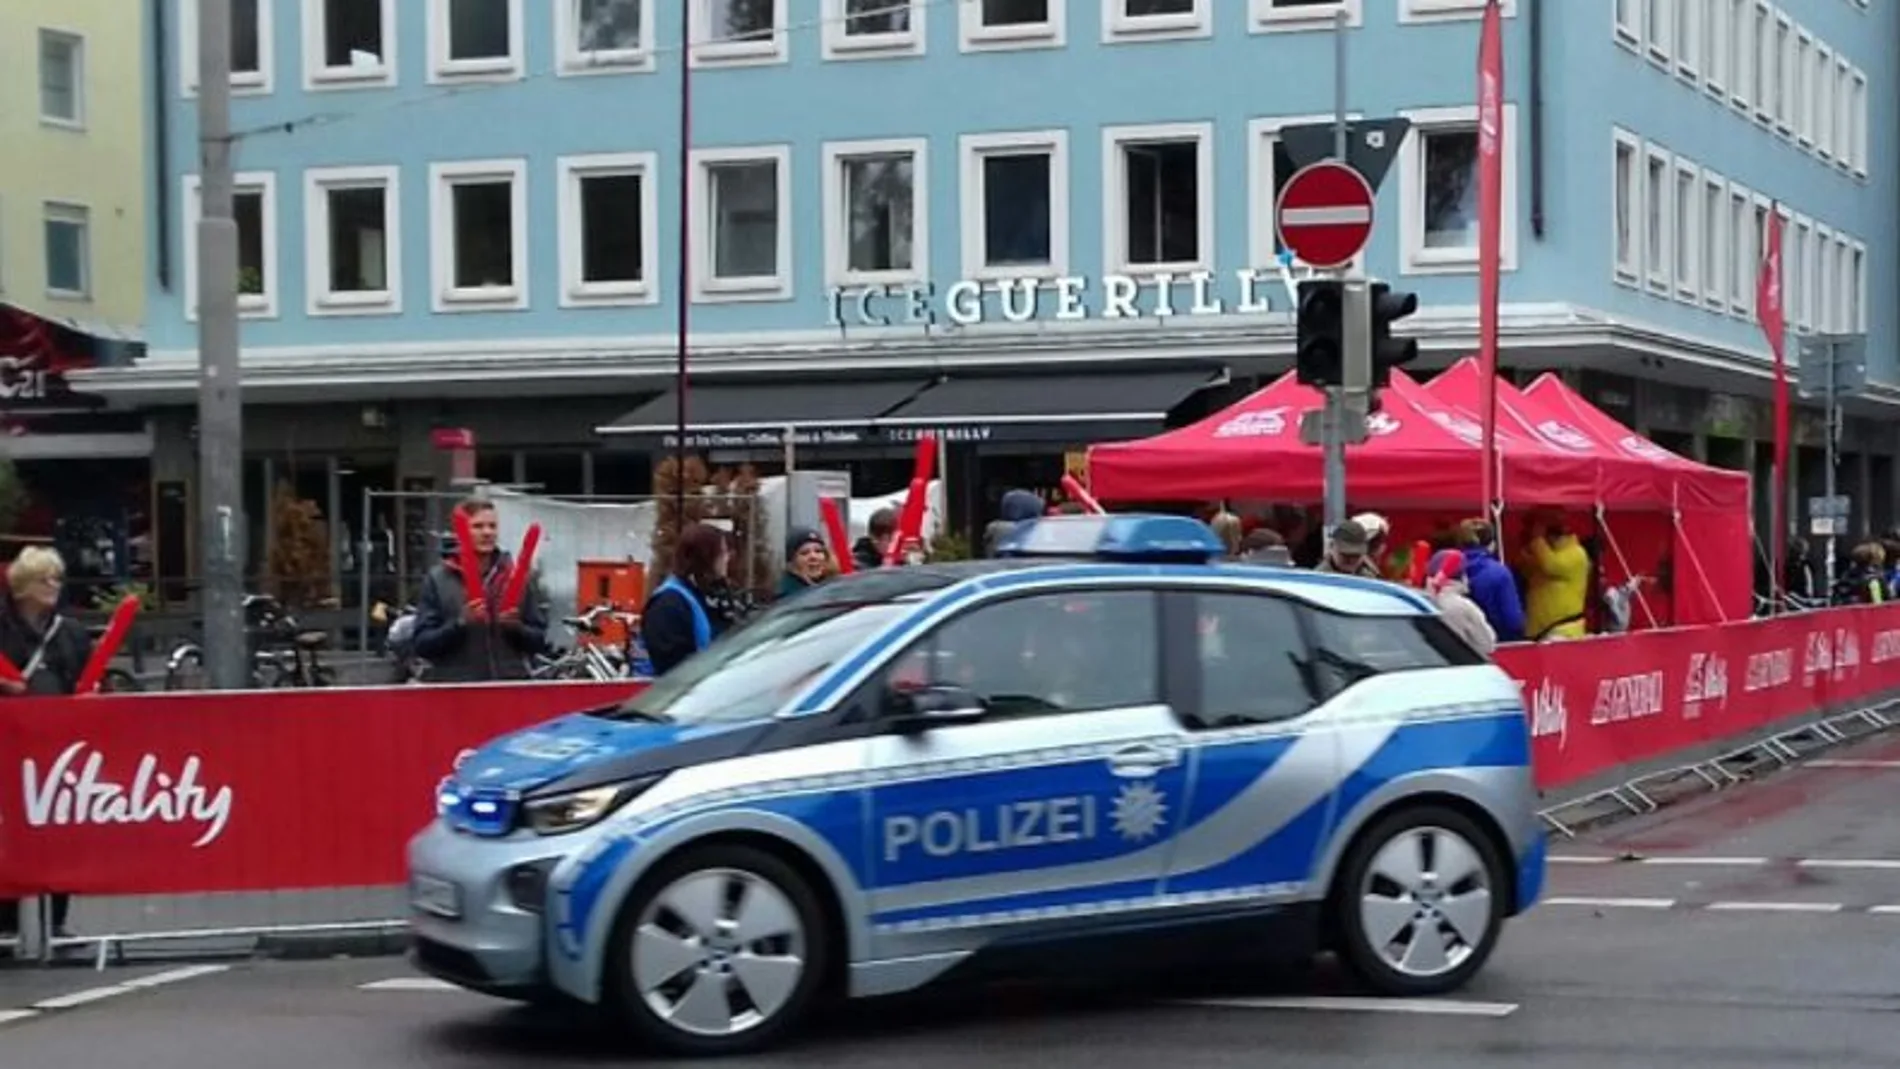 La Policía detiene al agresor de Múnich